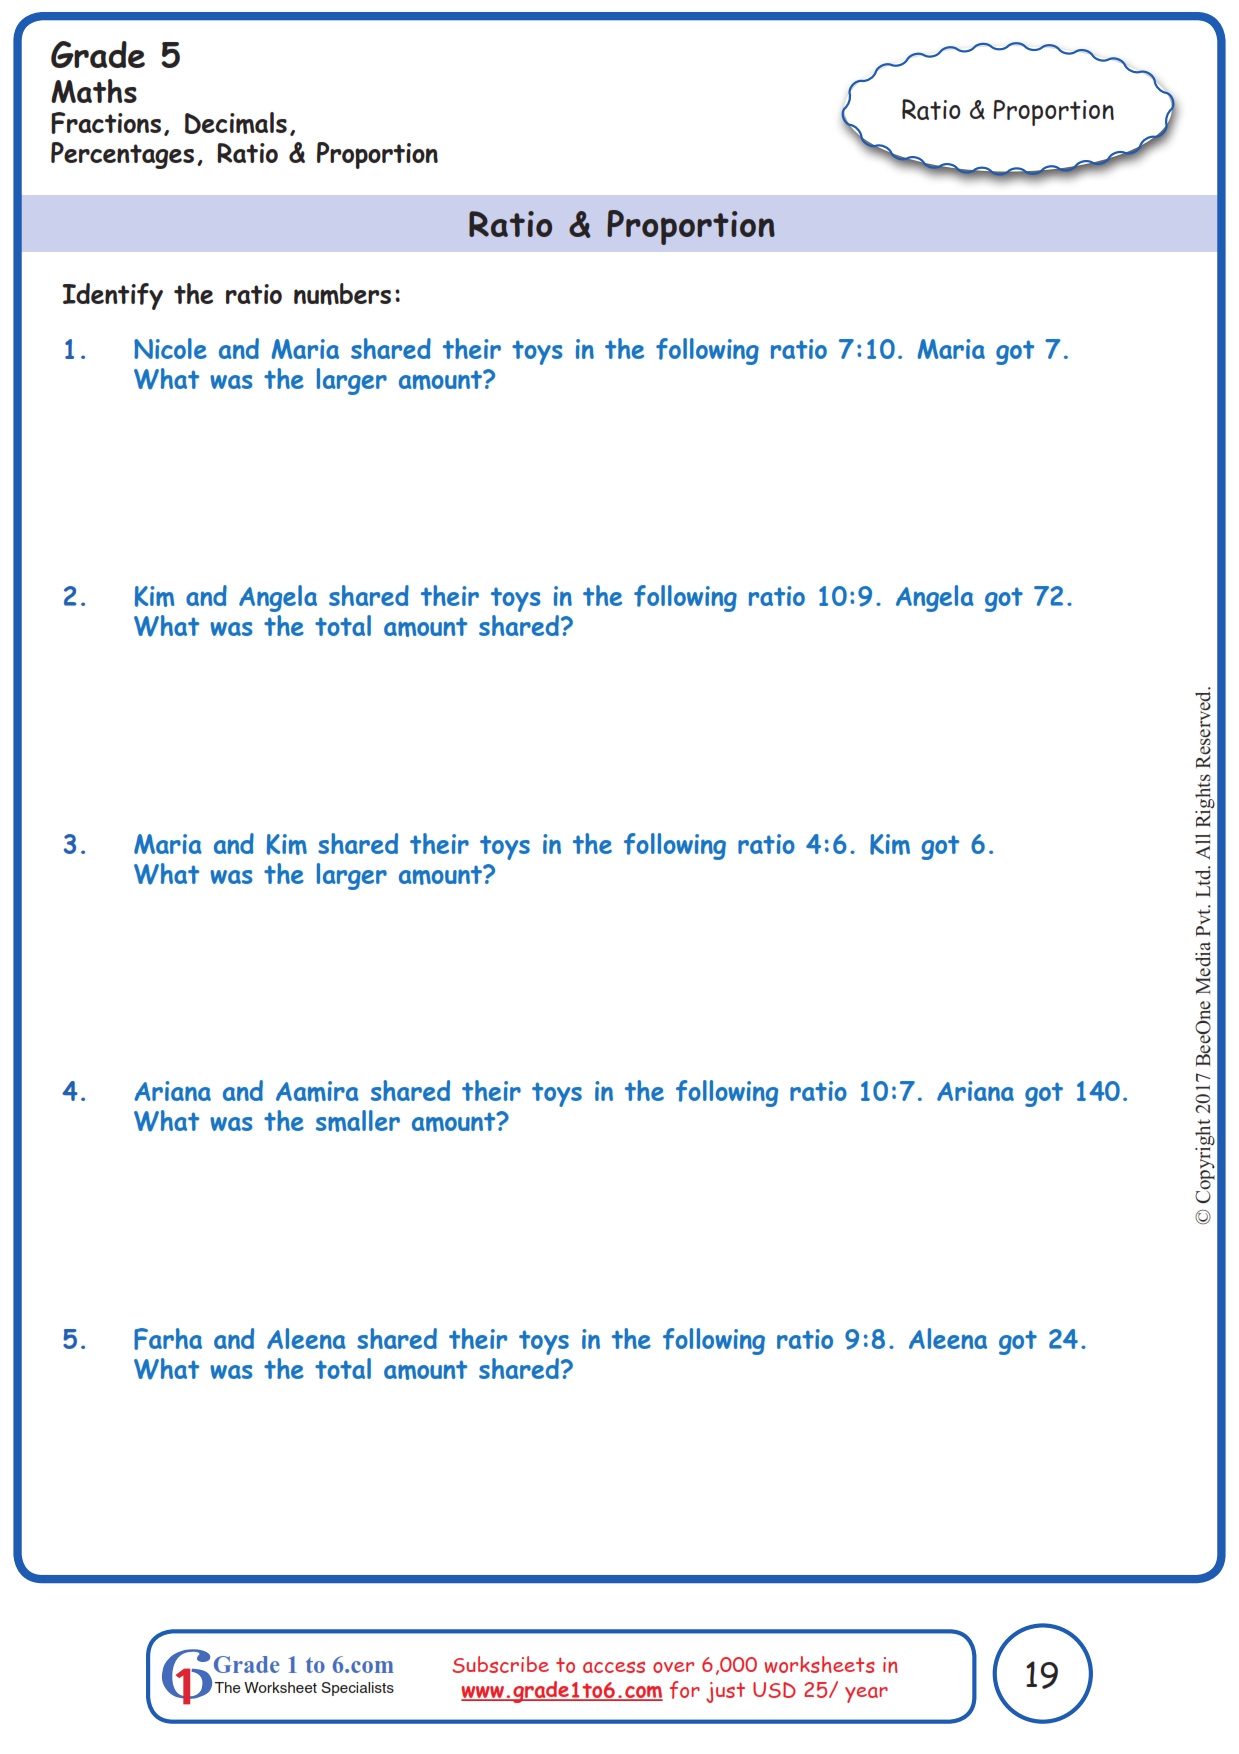 grade 5 ratio proportion word problems www grade1to6 com